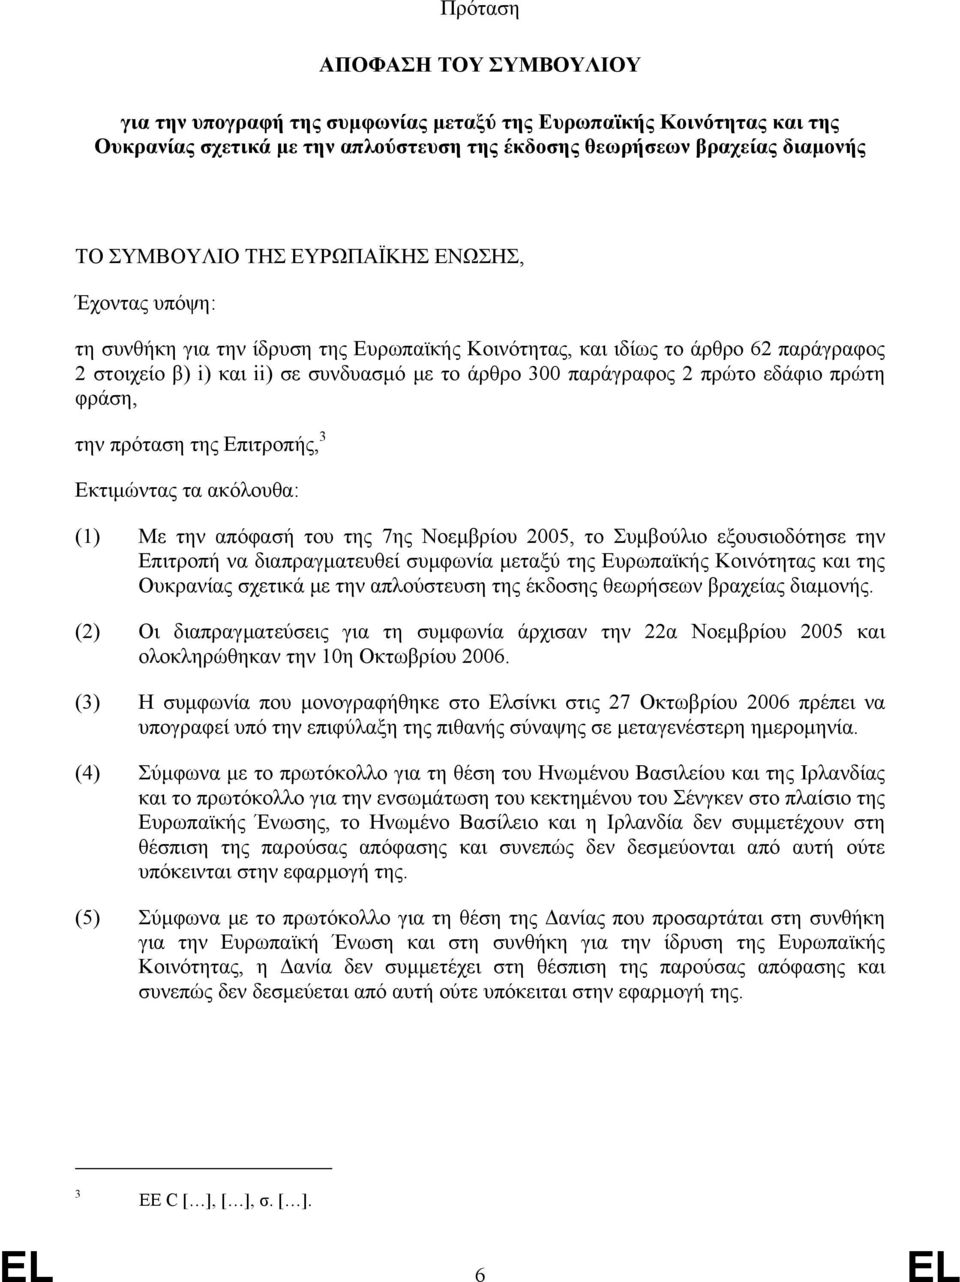 πρώτη φράση, την πρόταση της Επιτροπής, 3 Εκτιμώντας τα ακόλουθα: (1) Με την απόφασή του της 7ης Νοεμβρίου 2005, το Συμβούλιο εξουσιοδότησε την Επιτροπή να διαπραγματευθεί συμφωνία μεταξύ της